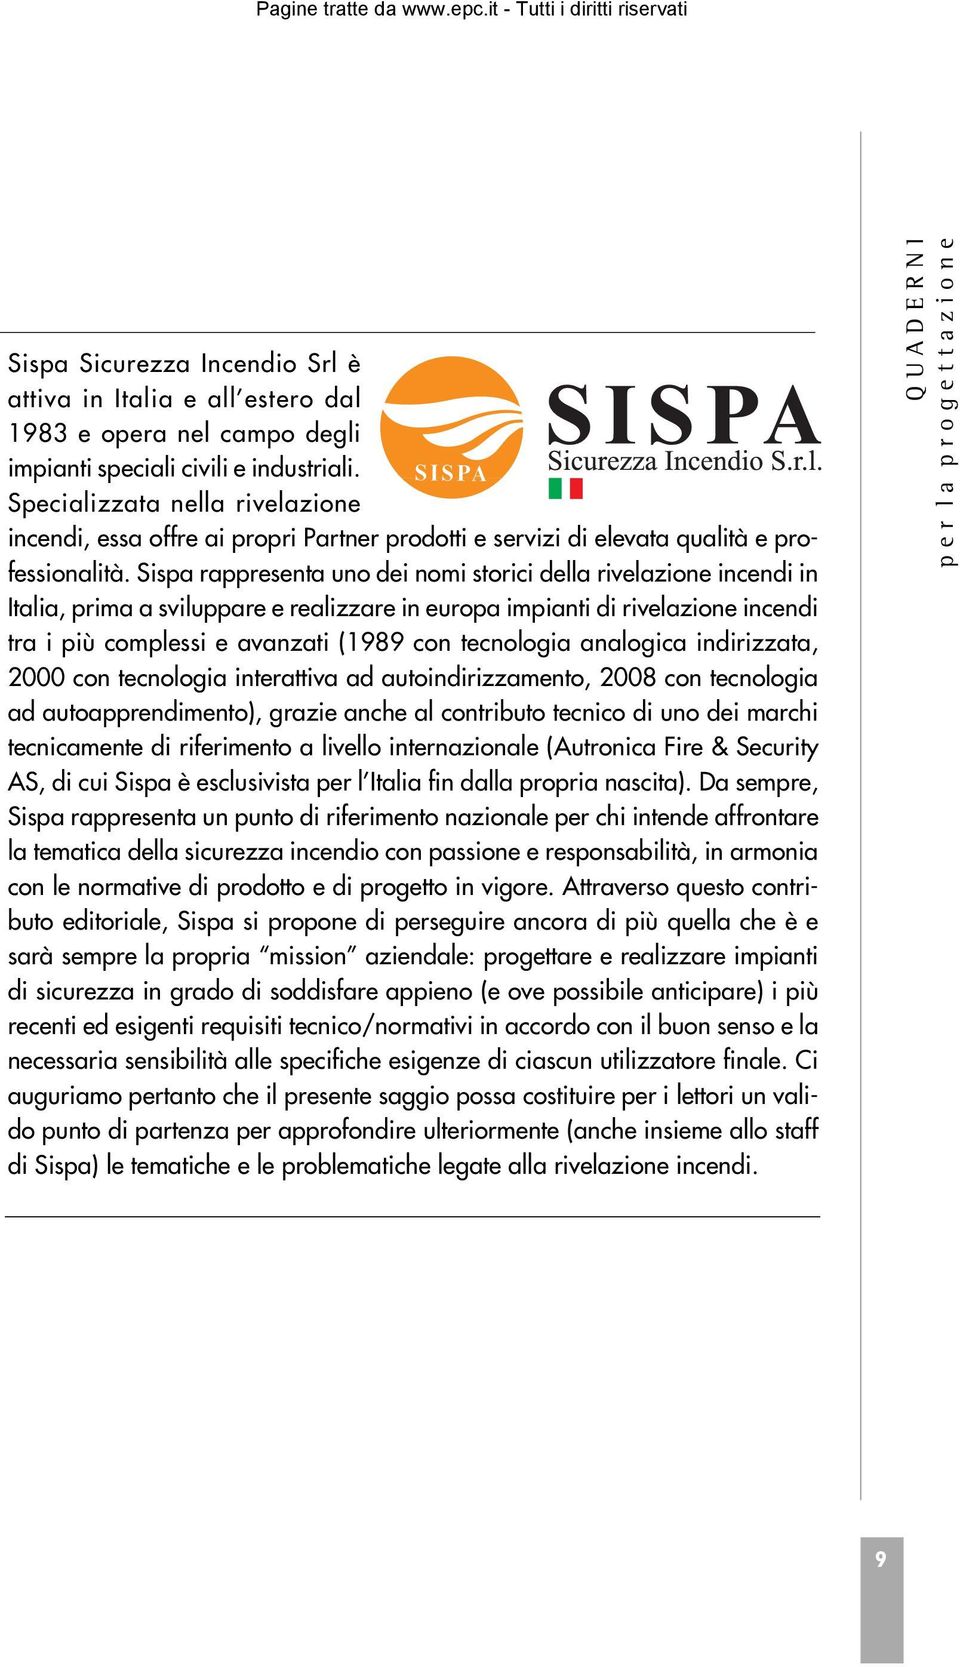 Sispa rappresenta uno dei nomi storici della rivelazione incendi in Italia, prima a sviluppare e realizzare in europa impianti di rivelazione incendi tra i più complessi e avanzati (1989 con